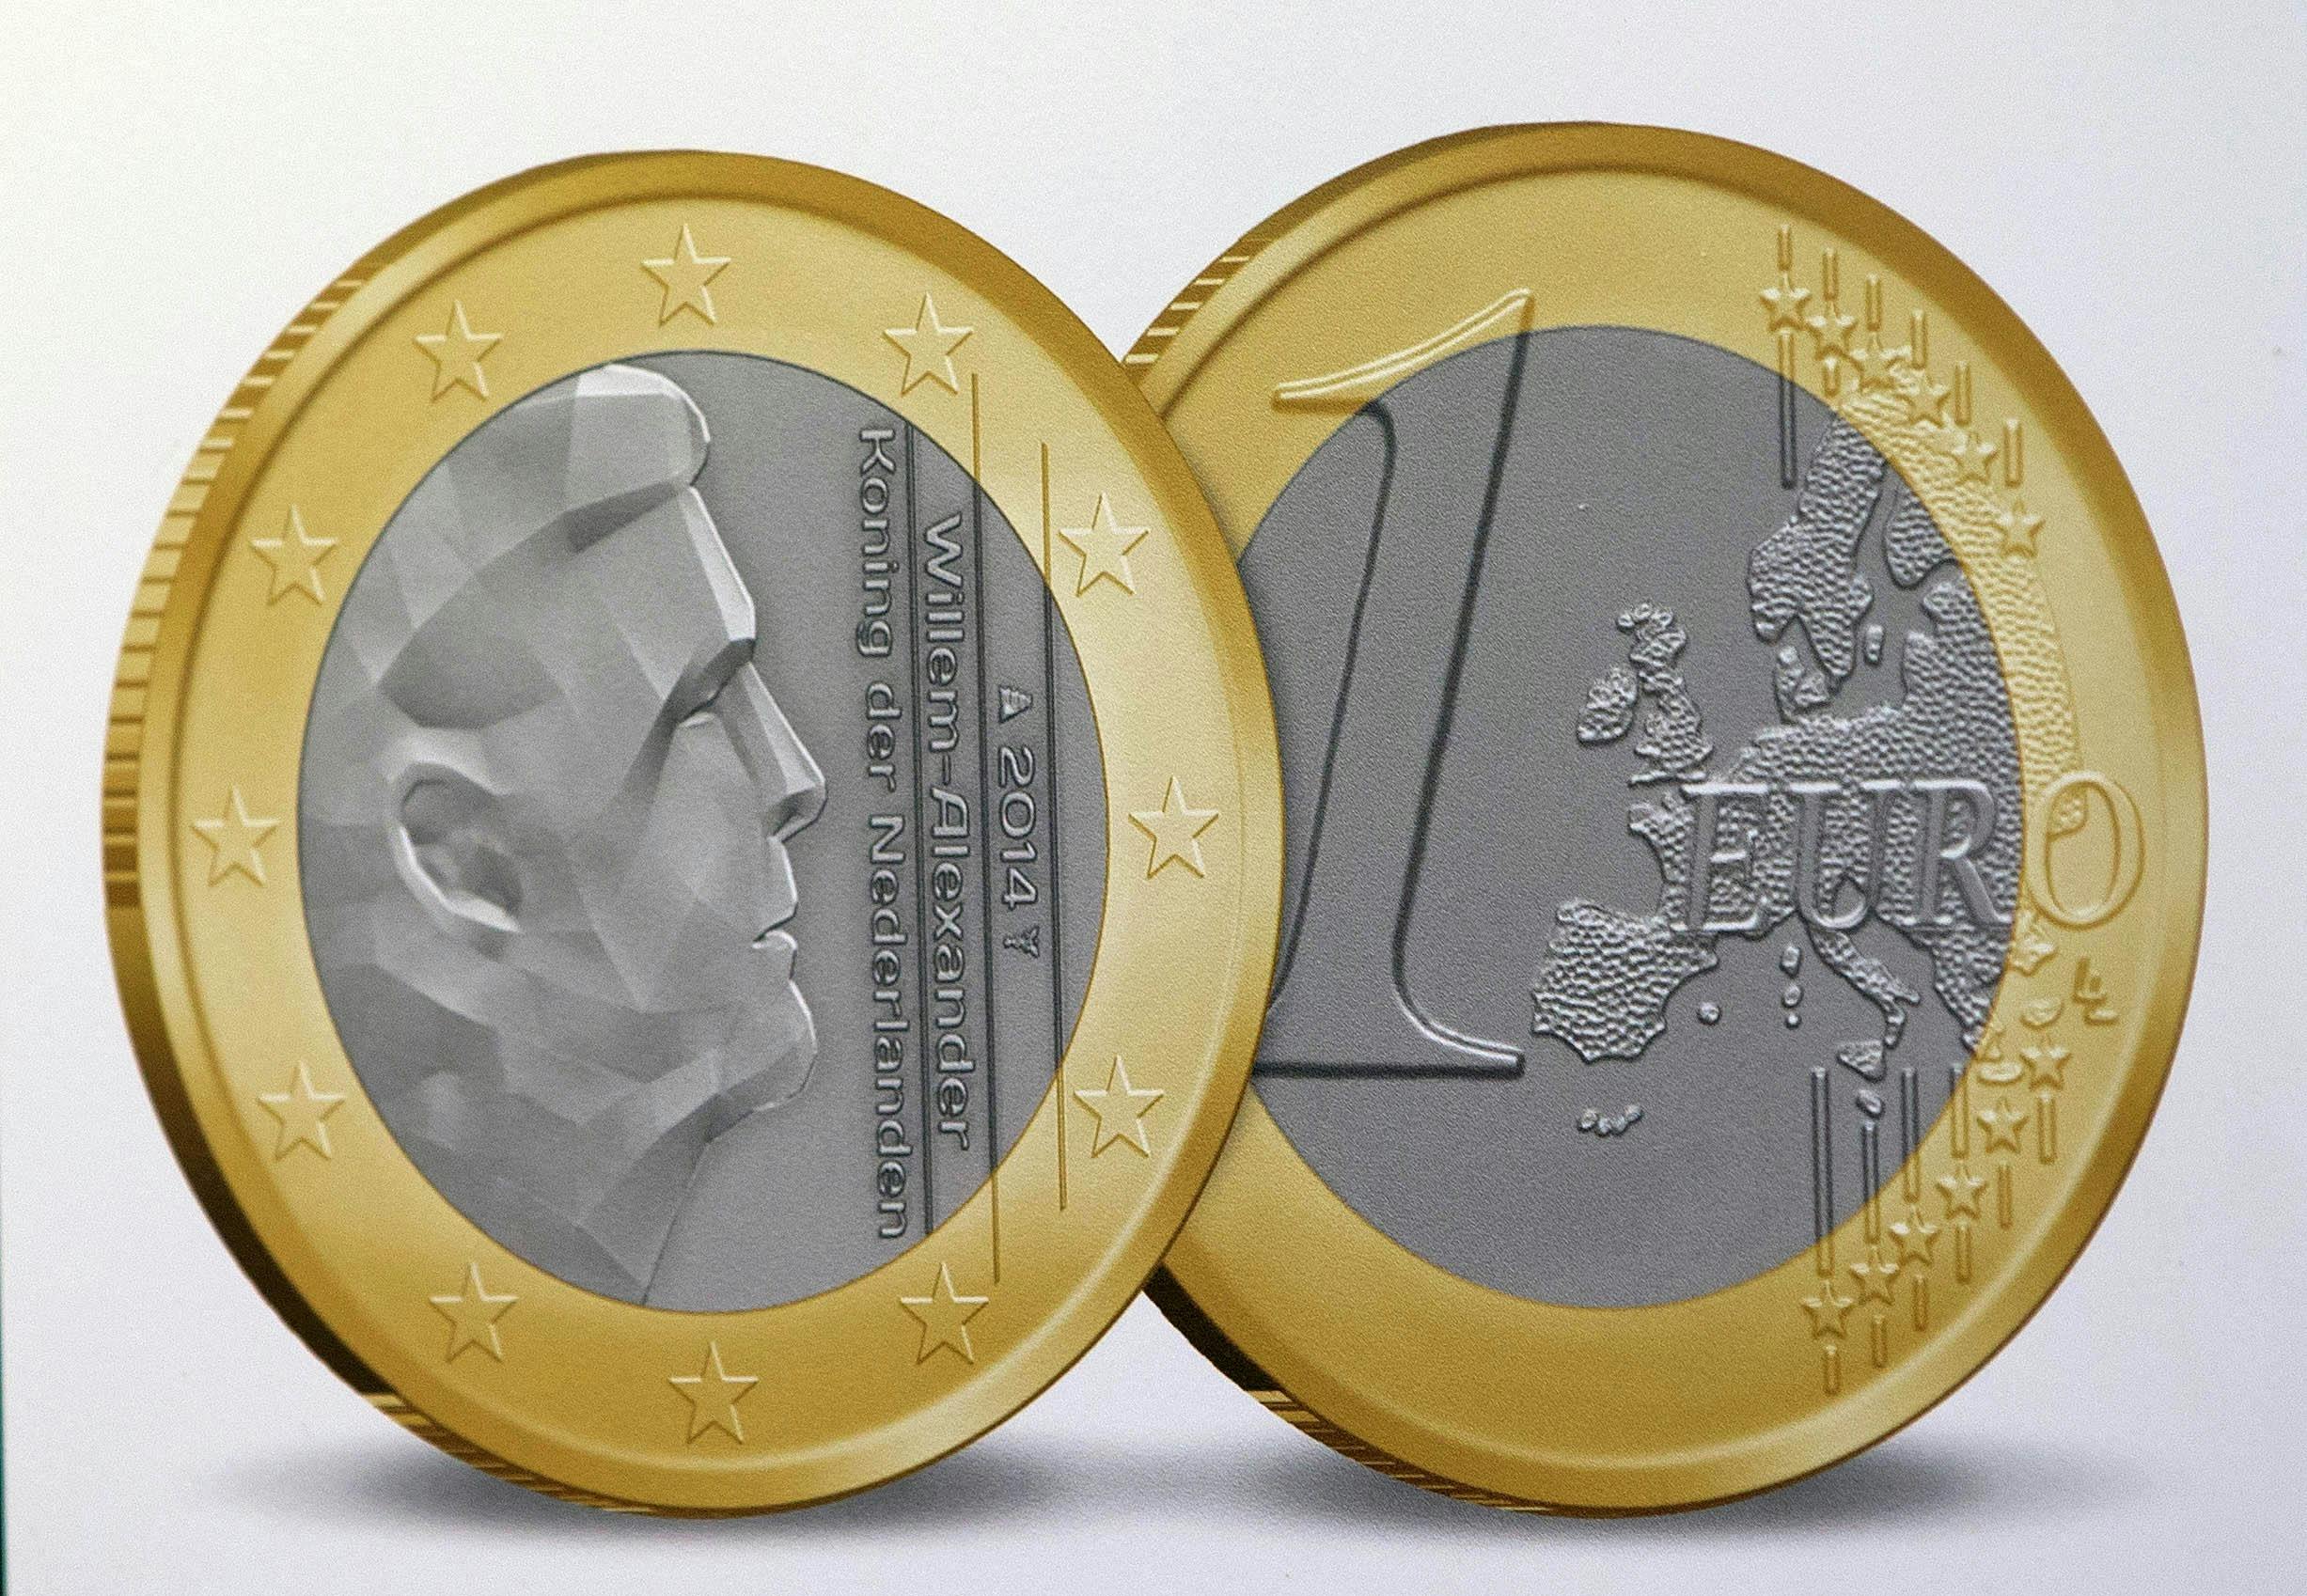 Euromønten med billede af kong Willem-Alexander, som Erwin Olaf har designet.&nbsp;
